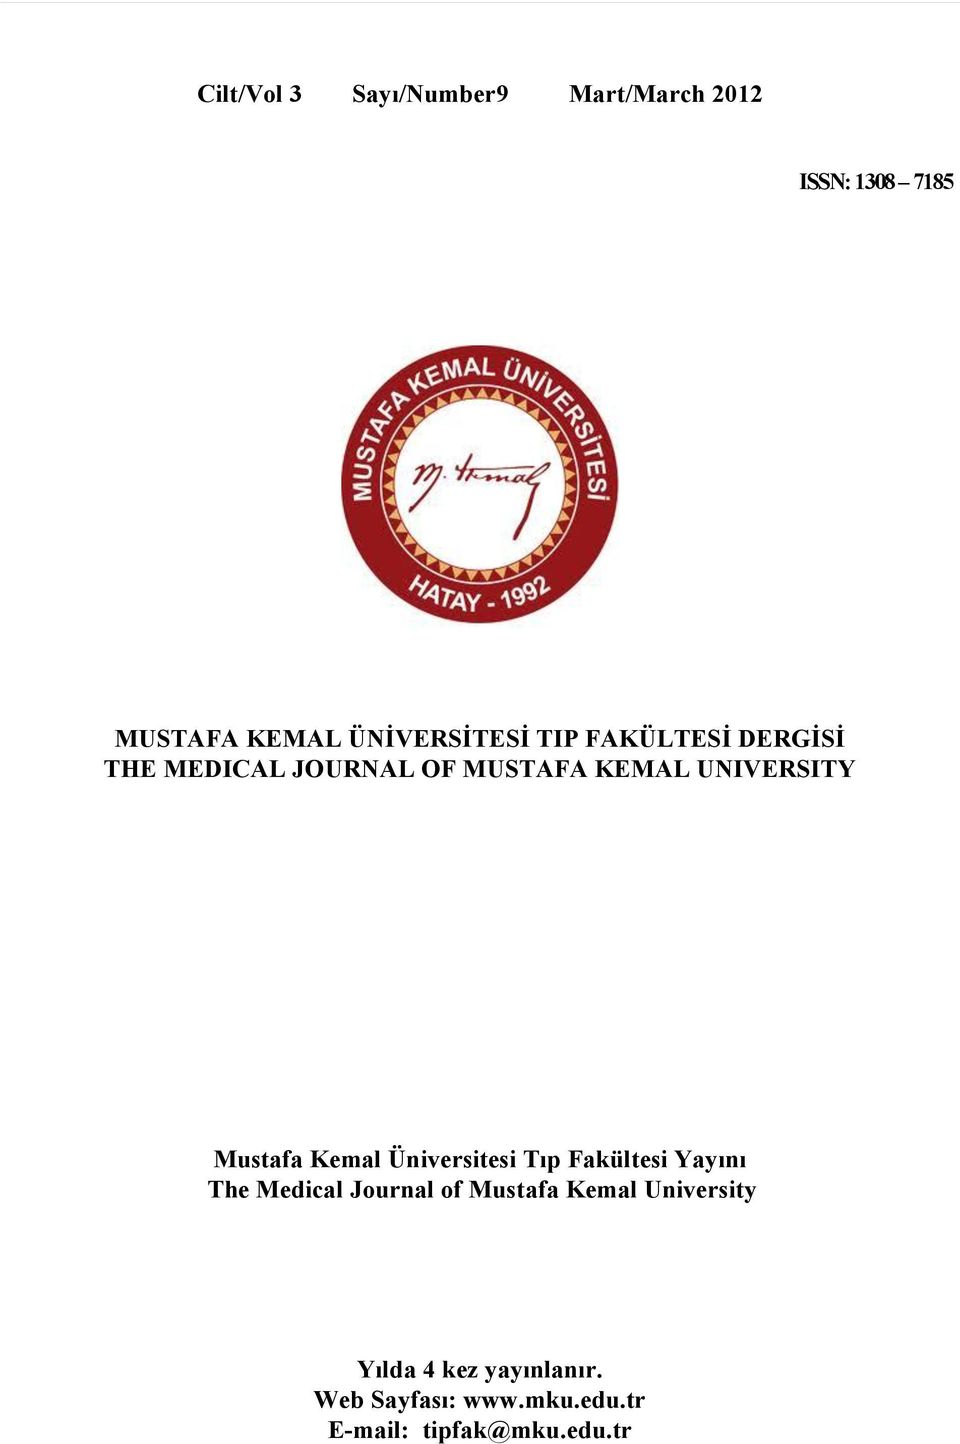 UNIVERSITY Mustafa Kemal Üniversitesi Tıp Fakültesi Yayını The Medical Journal of